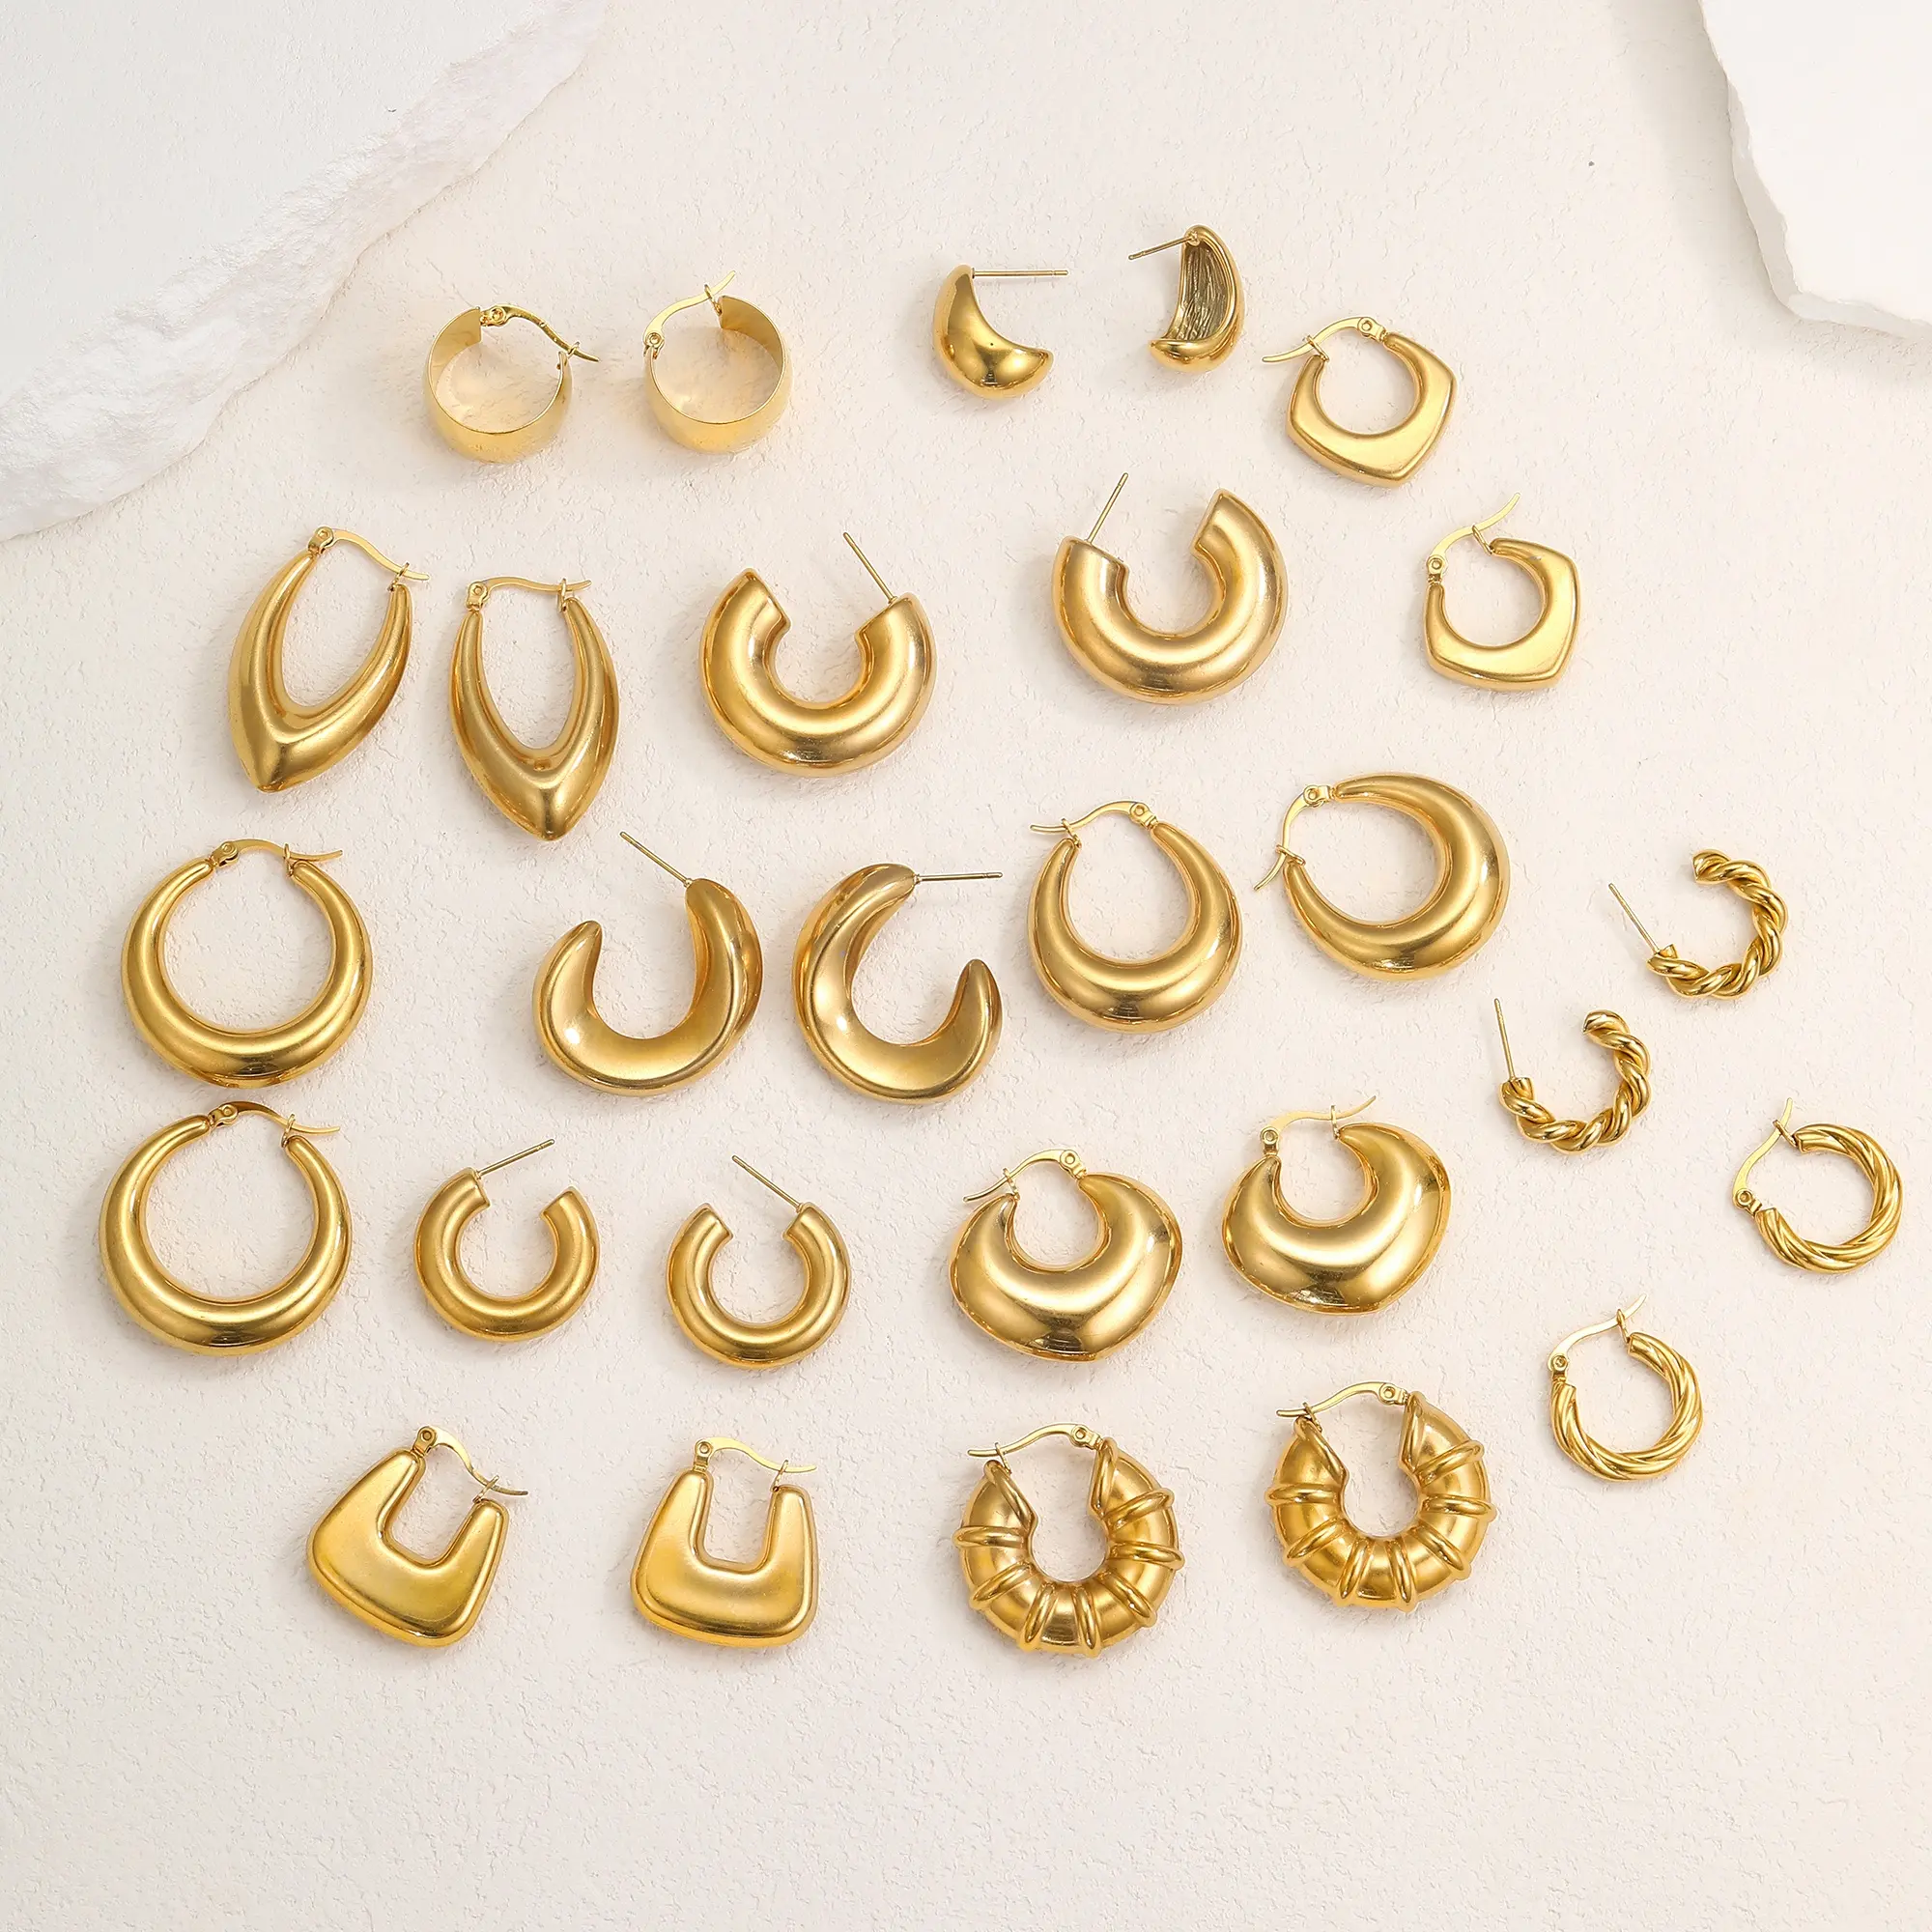 Women Hypoallergenic Jewelry Earrings Stainless Steel 18k Gold Plated Screw Twisted C-shape Hoop Earrings